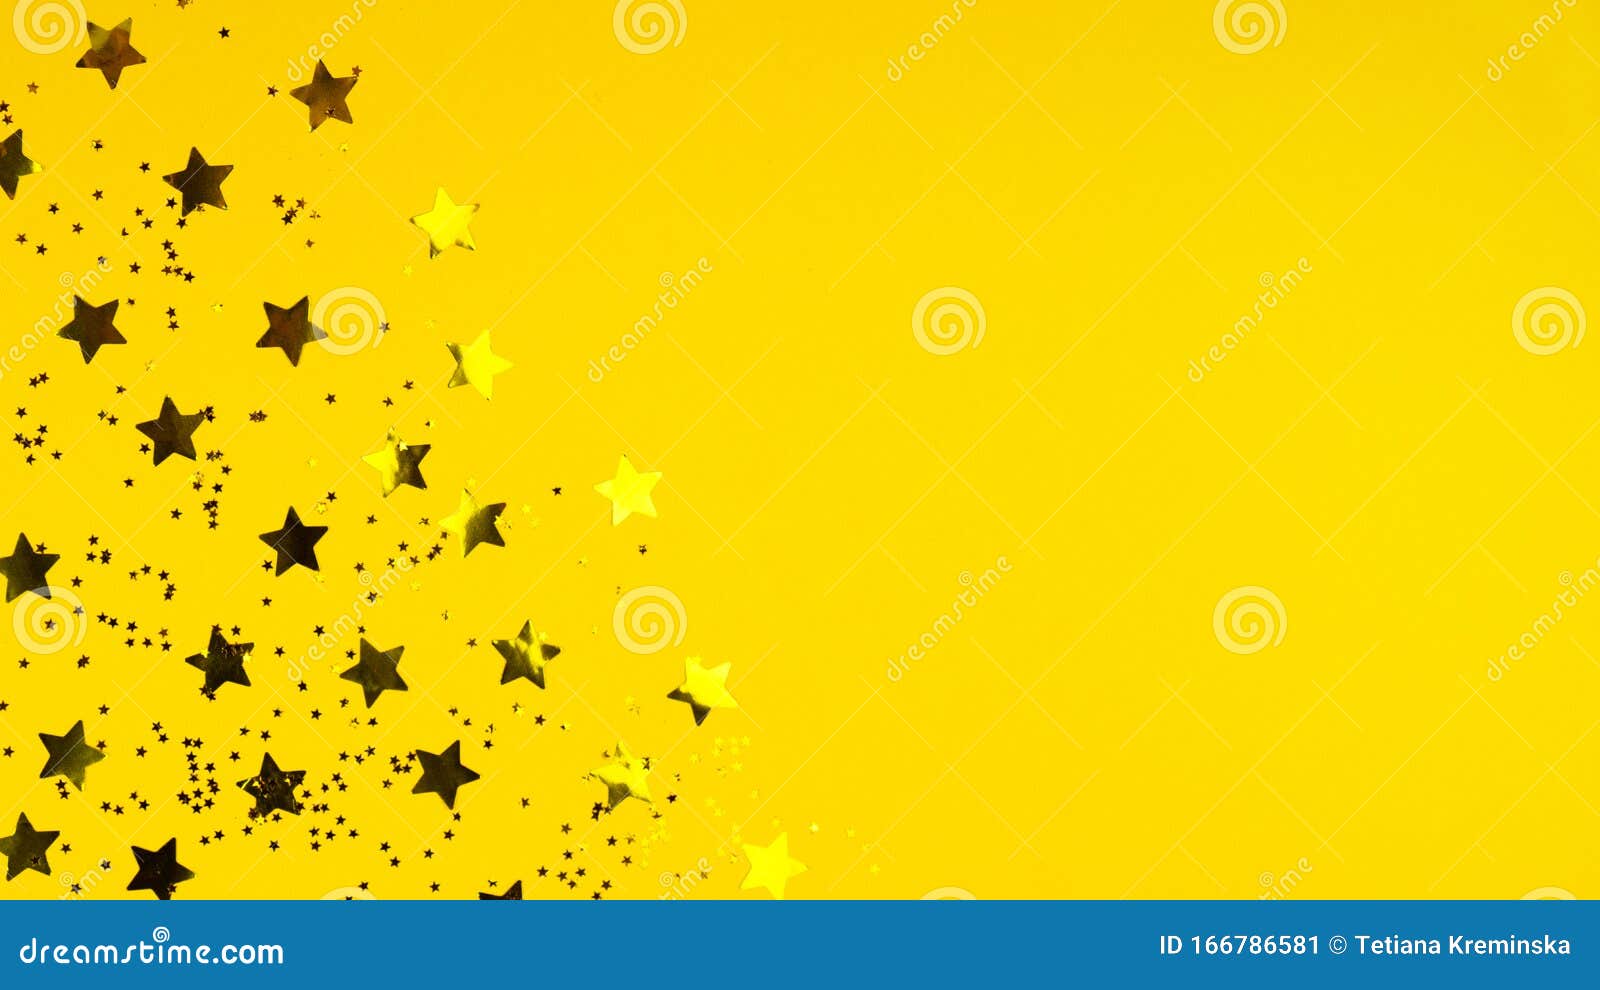 Hãy cùng khám phá hình ảnh liên quan đến Sao Vàng và Nền Vàng Ánh Kim Loại để tận hưởng vẻ đẹp lấp lánh của một bầu trời đầy sao và một nền đất màu vàng óng ánh như kim loại.